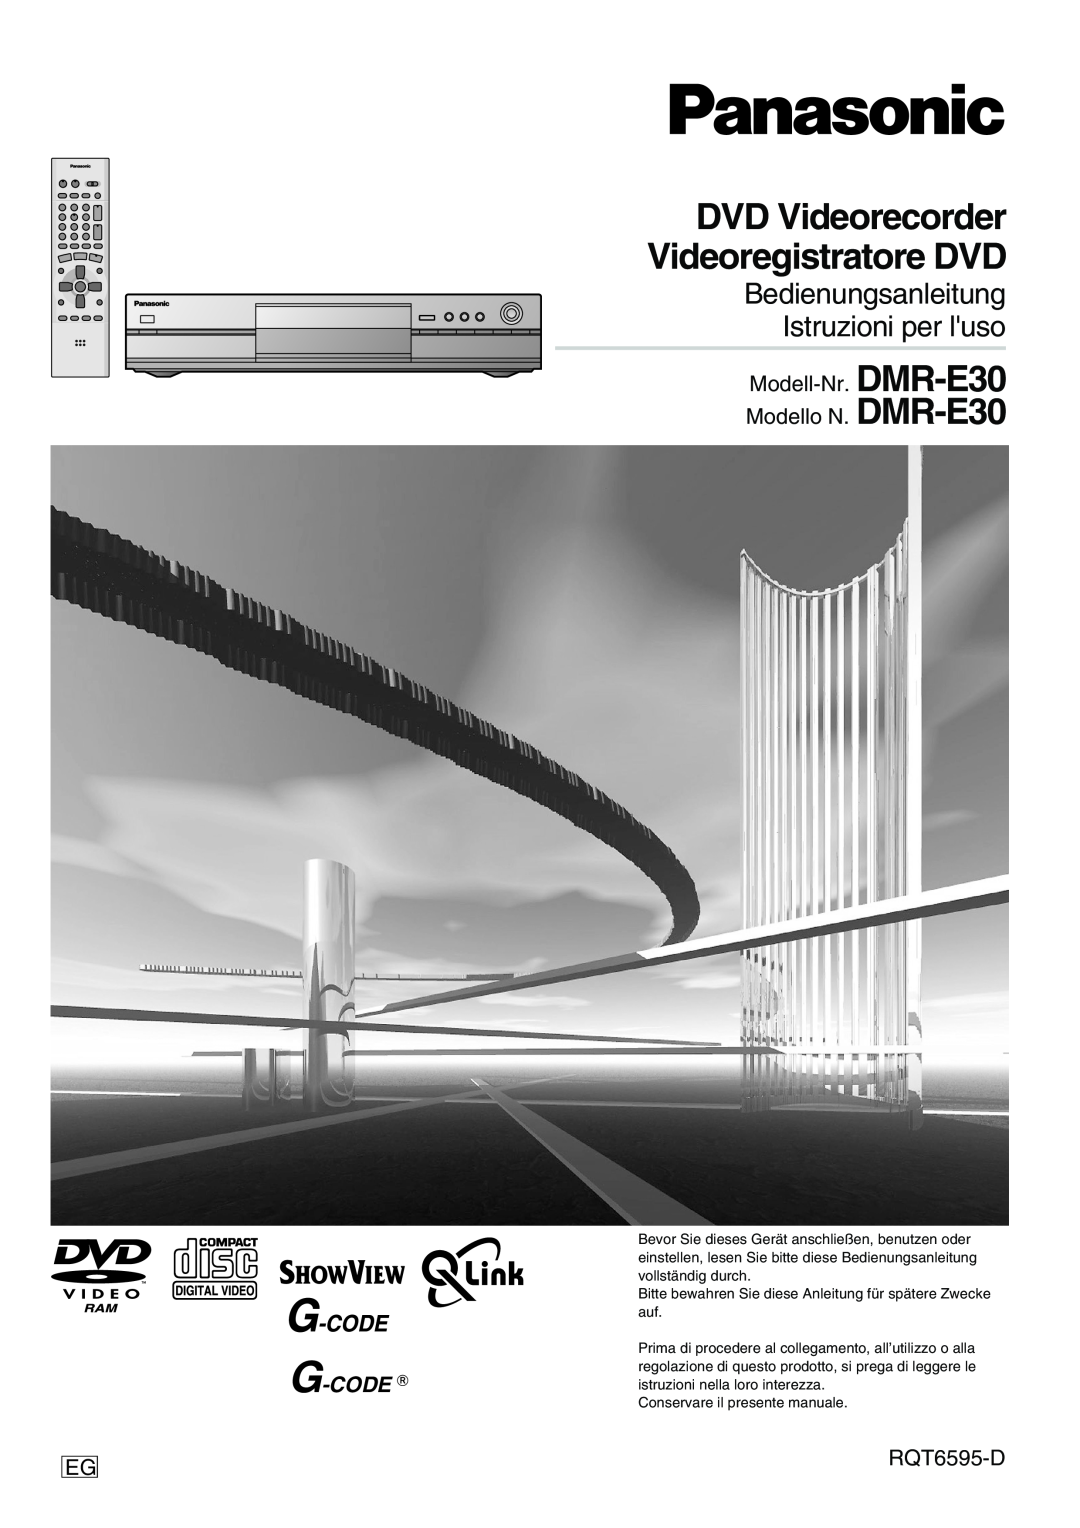 Panasonic manual Modell-Nr Modello N, G-CODE g, RQT6595-D, DMR-E30 DMR-E30, DVD Videorecorder Videoregistratore DVD 